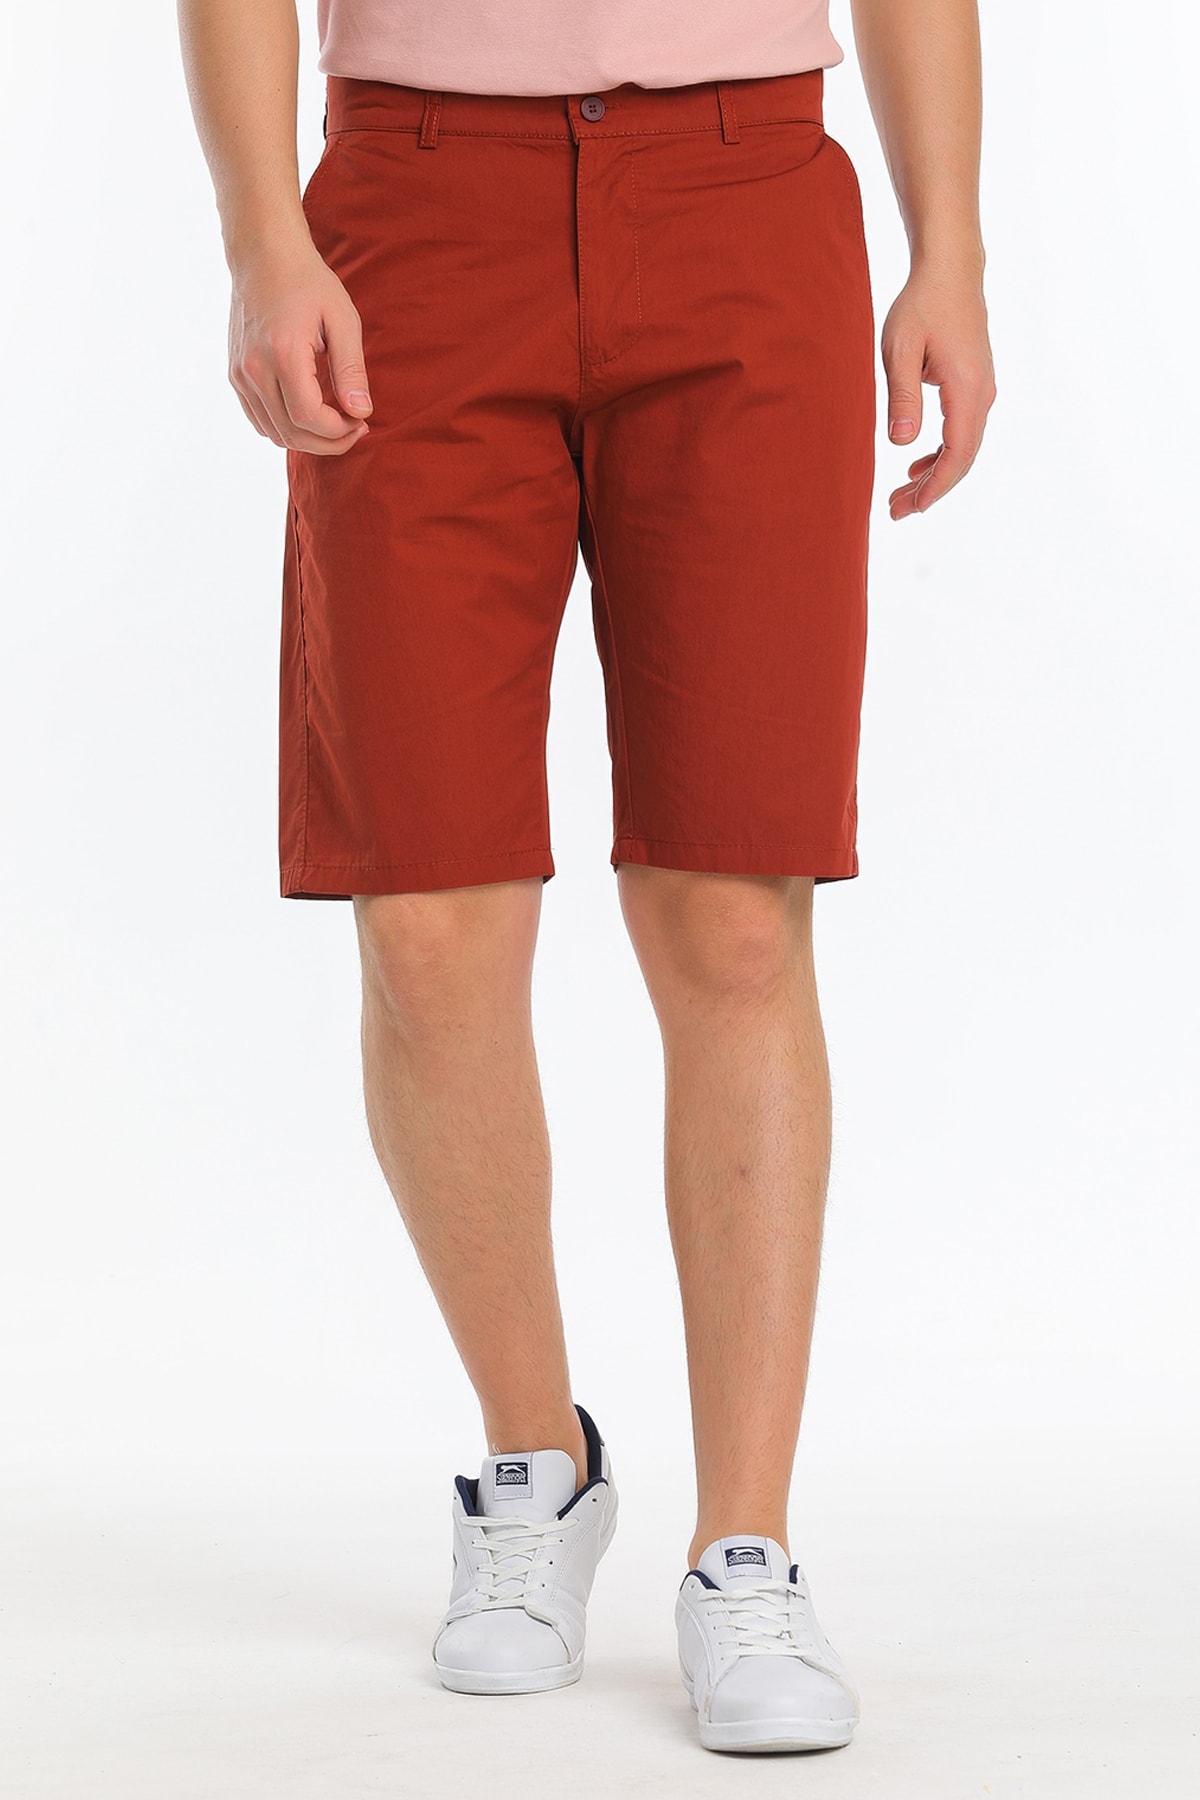 Мужские шорты Eddy бордово-красные Slazenger, красный мужские шорты стандартного кроя бордово красные 4842 madmext